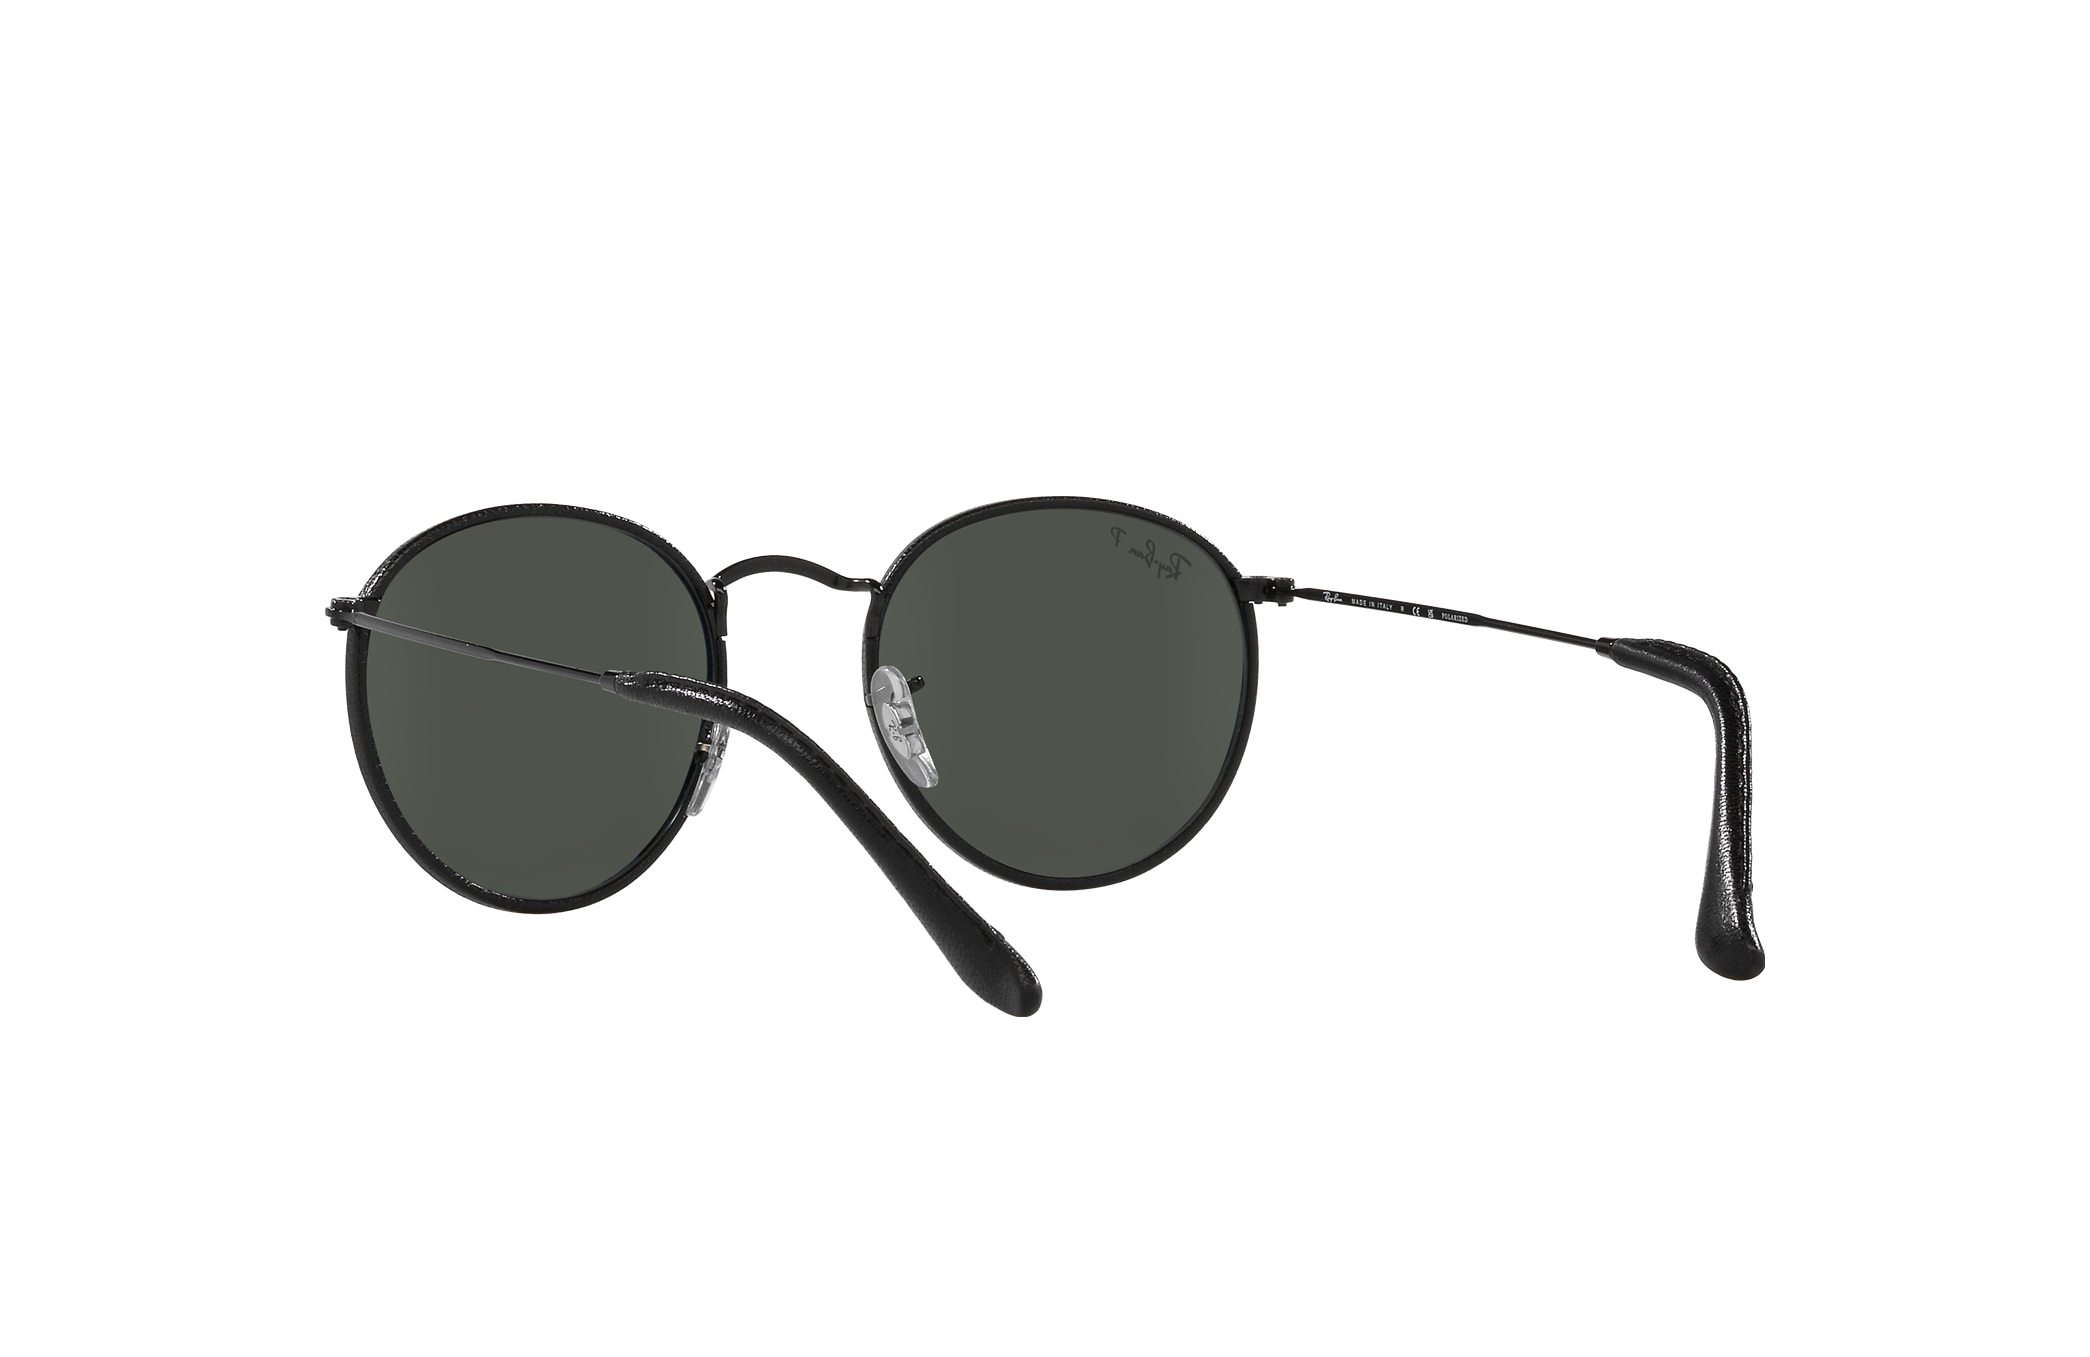 Buy R Resist Aviator Sunglasses Black For Men & Women Online @ Best Prices  in India | Flipkart.com